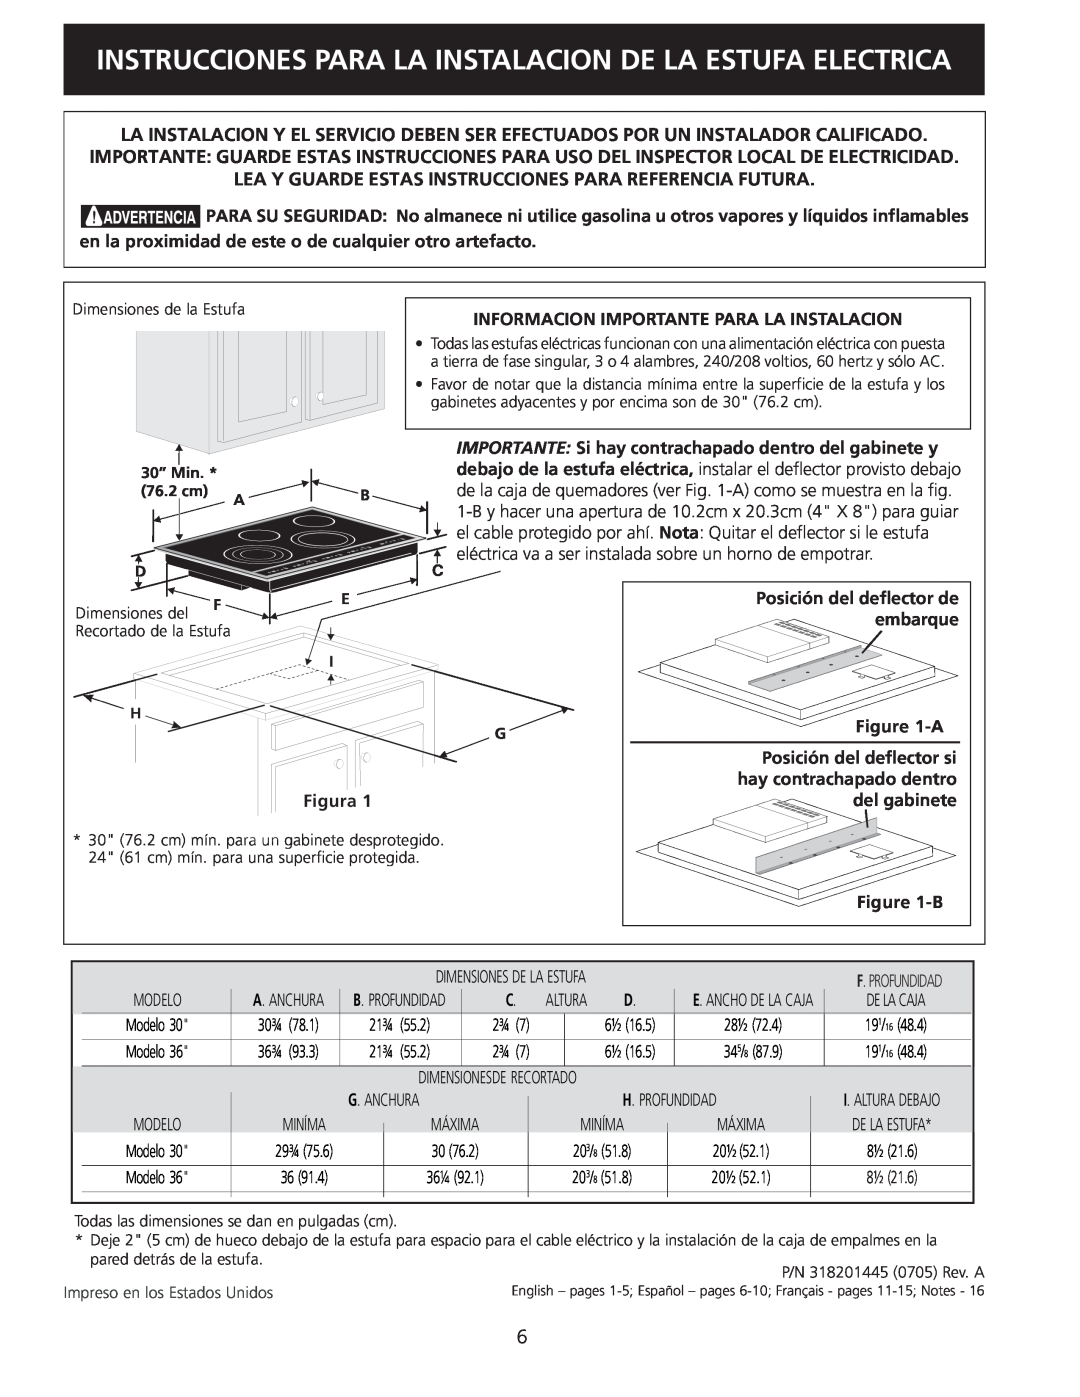 Electrolux 30 installation instructions Instrucciones Para La Instalacion De La Estufa Electrica 